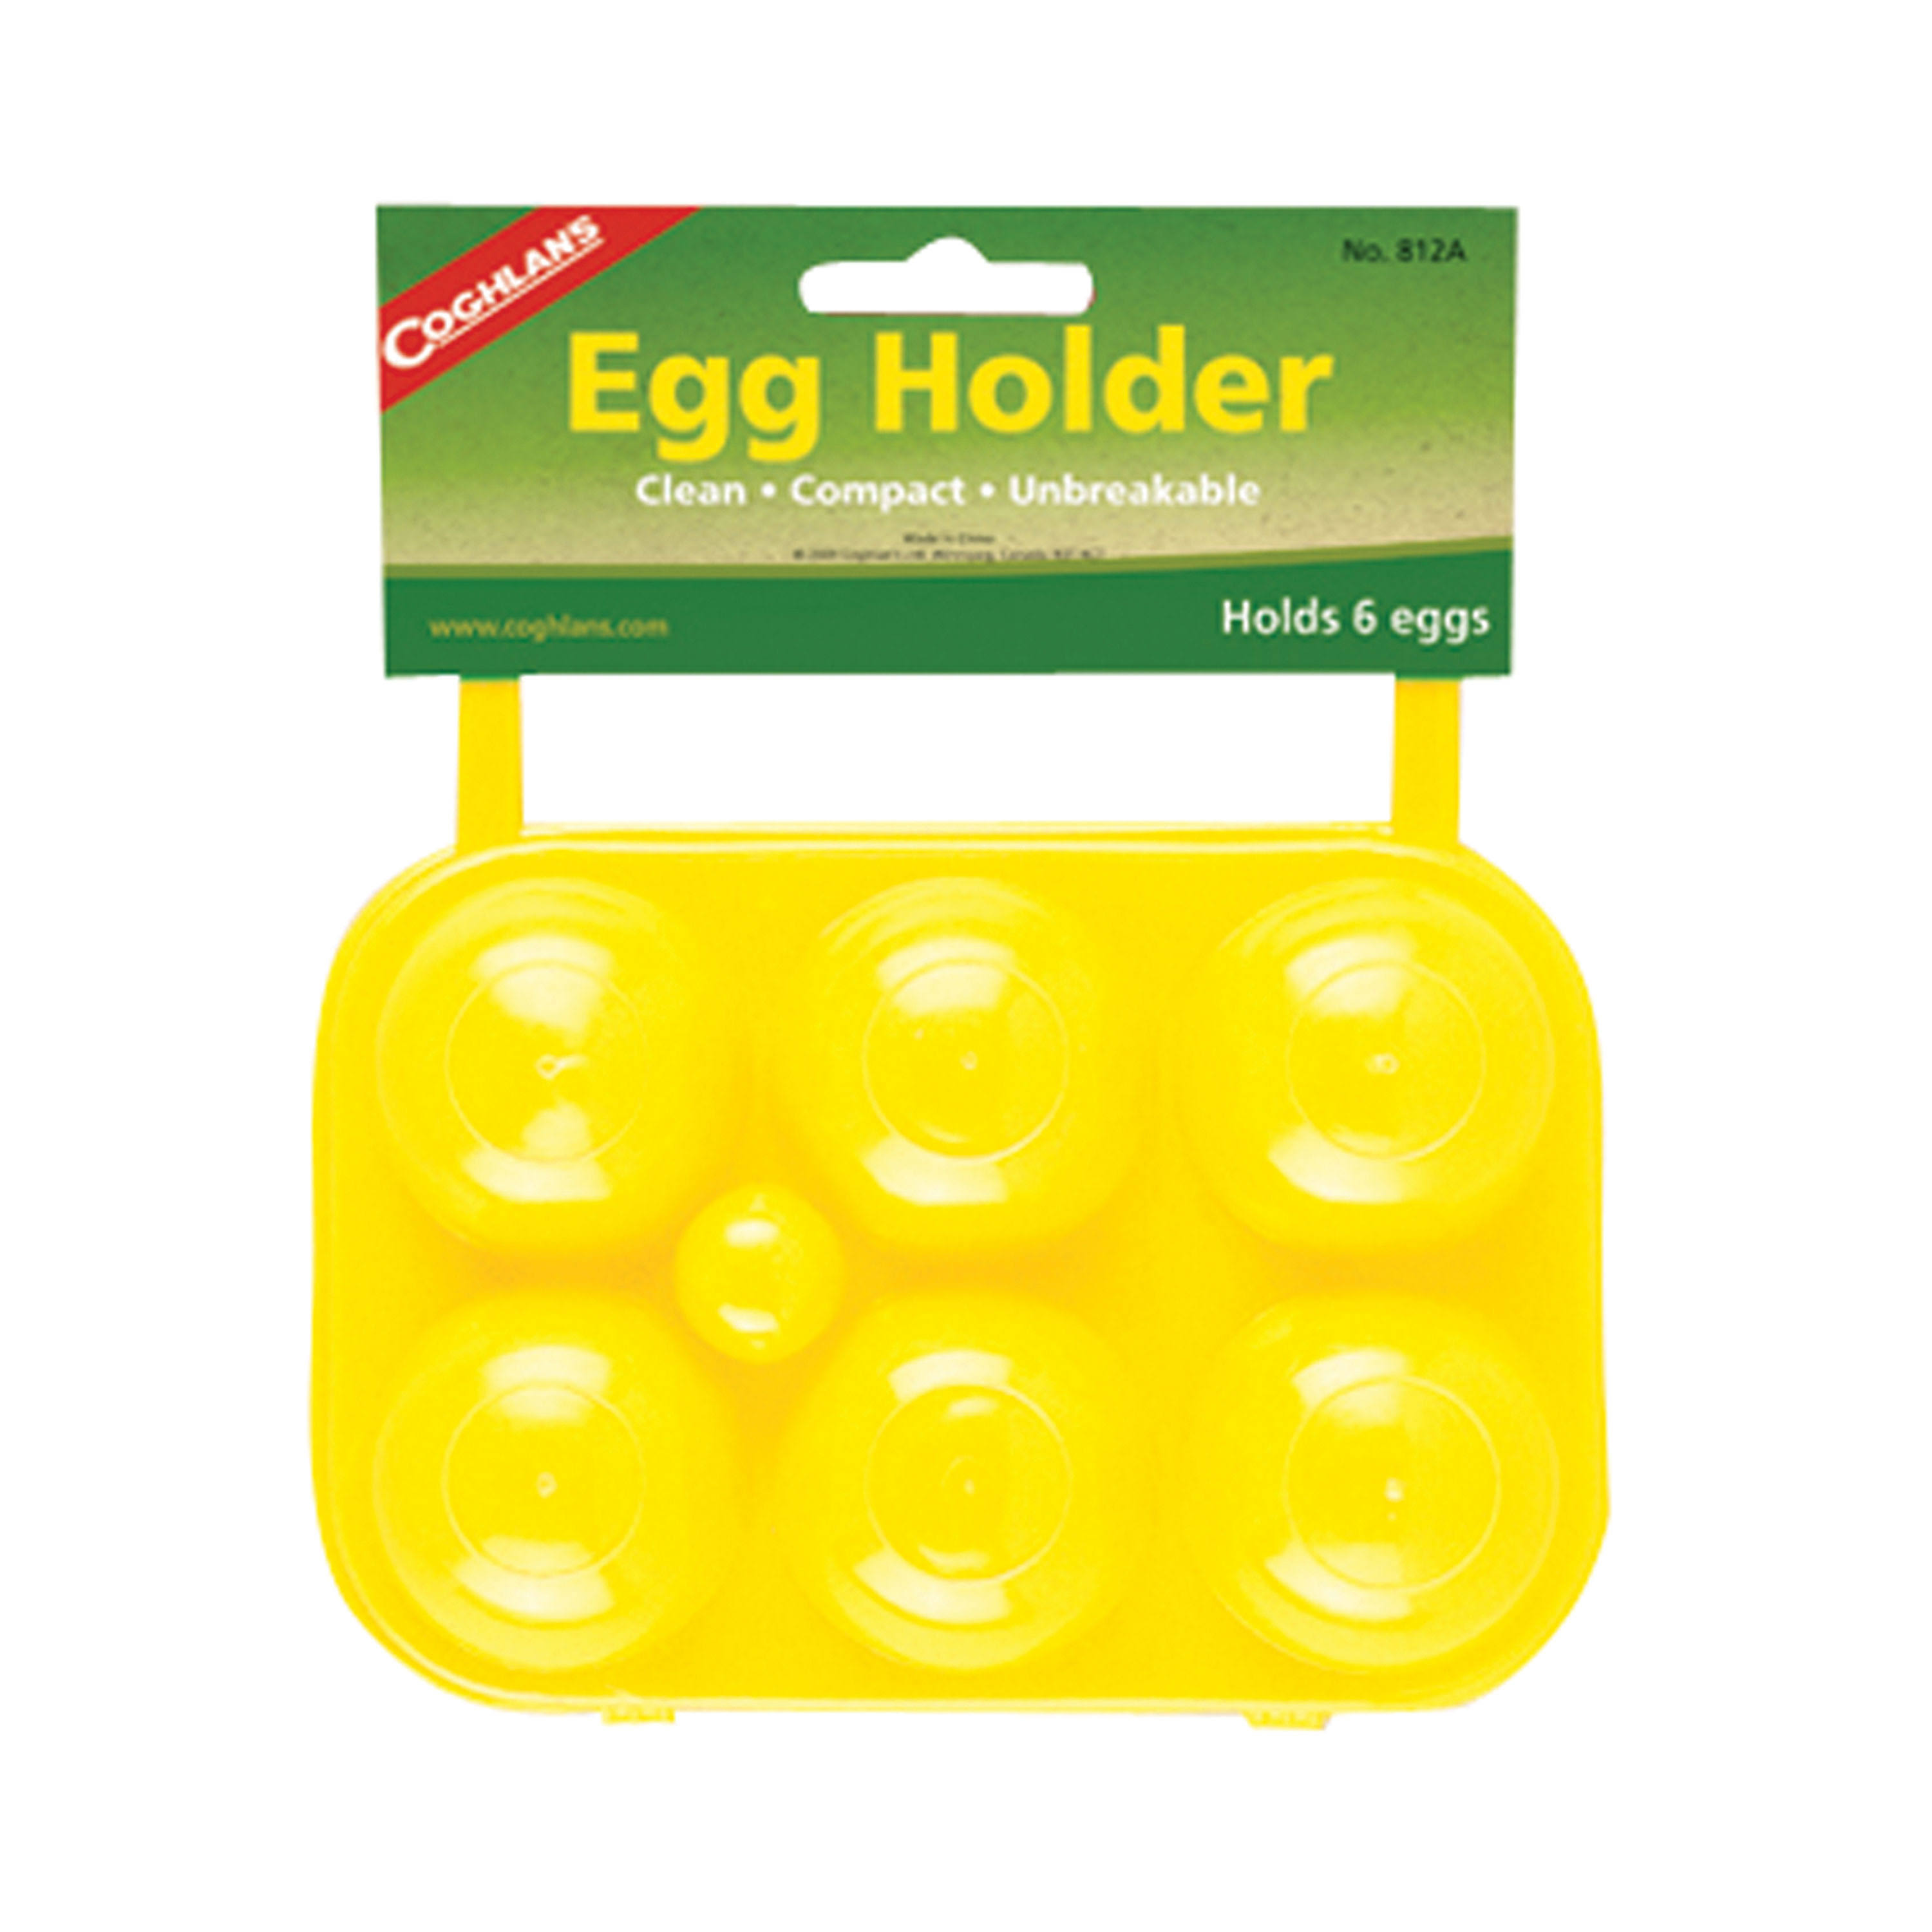 Coghlans 812A Egg Holder - 6 Eggs